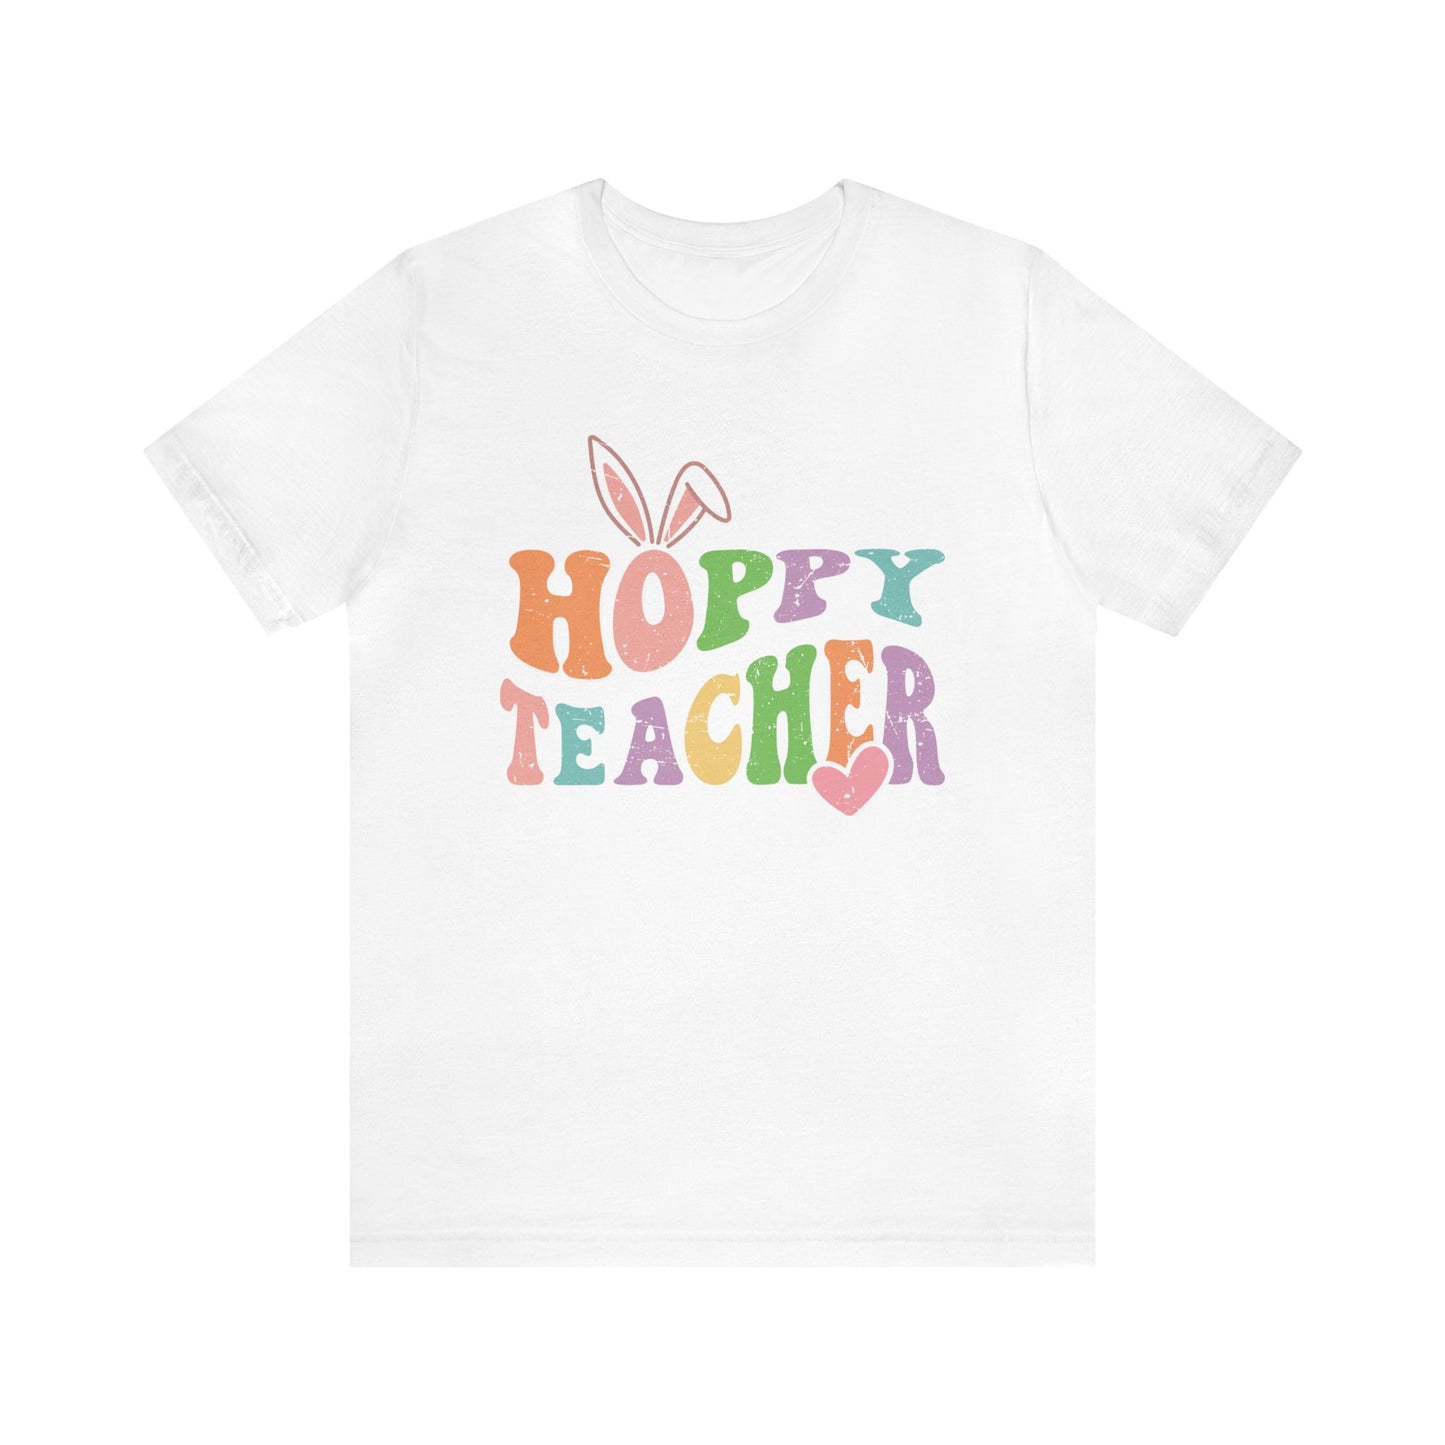 Hoppy Teacher Easter Women's Short Sleeve Tee